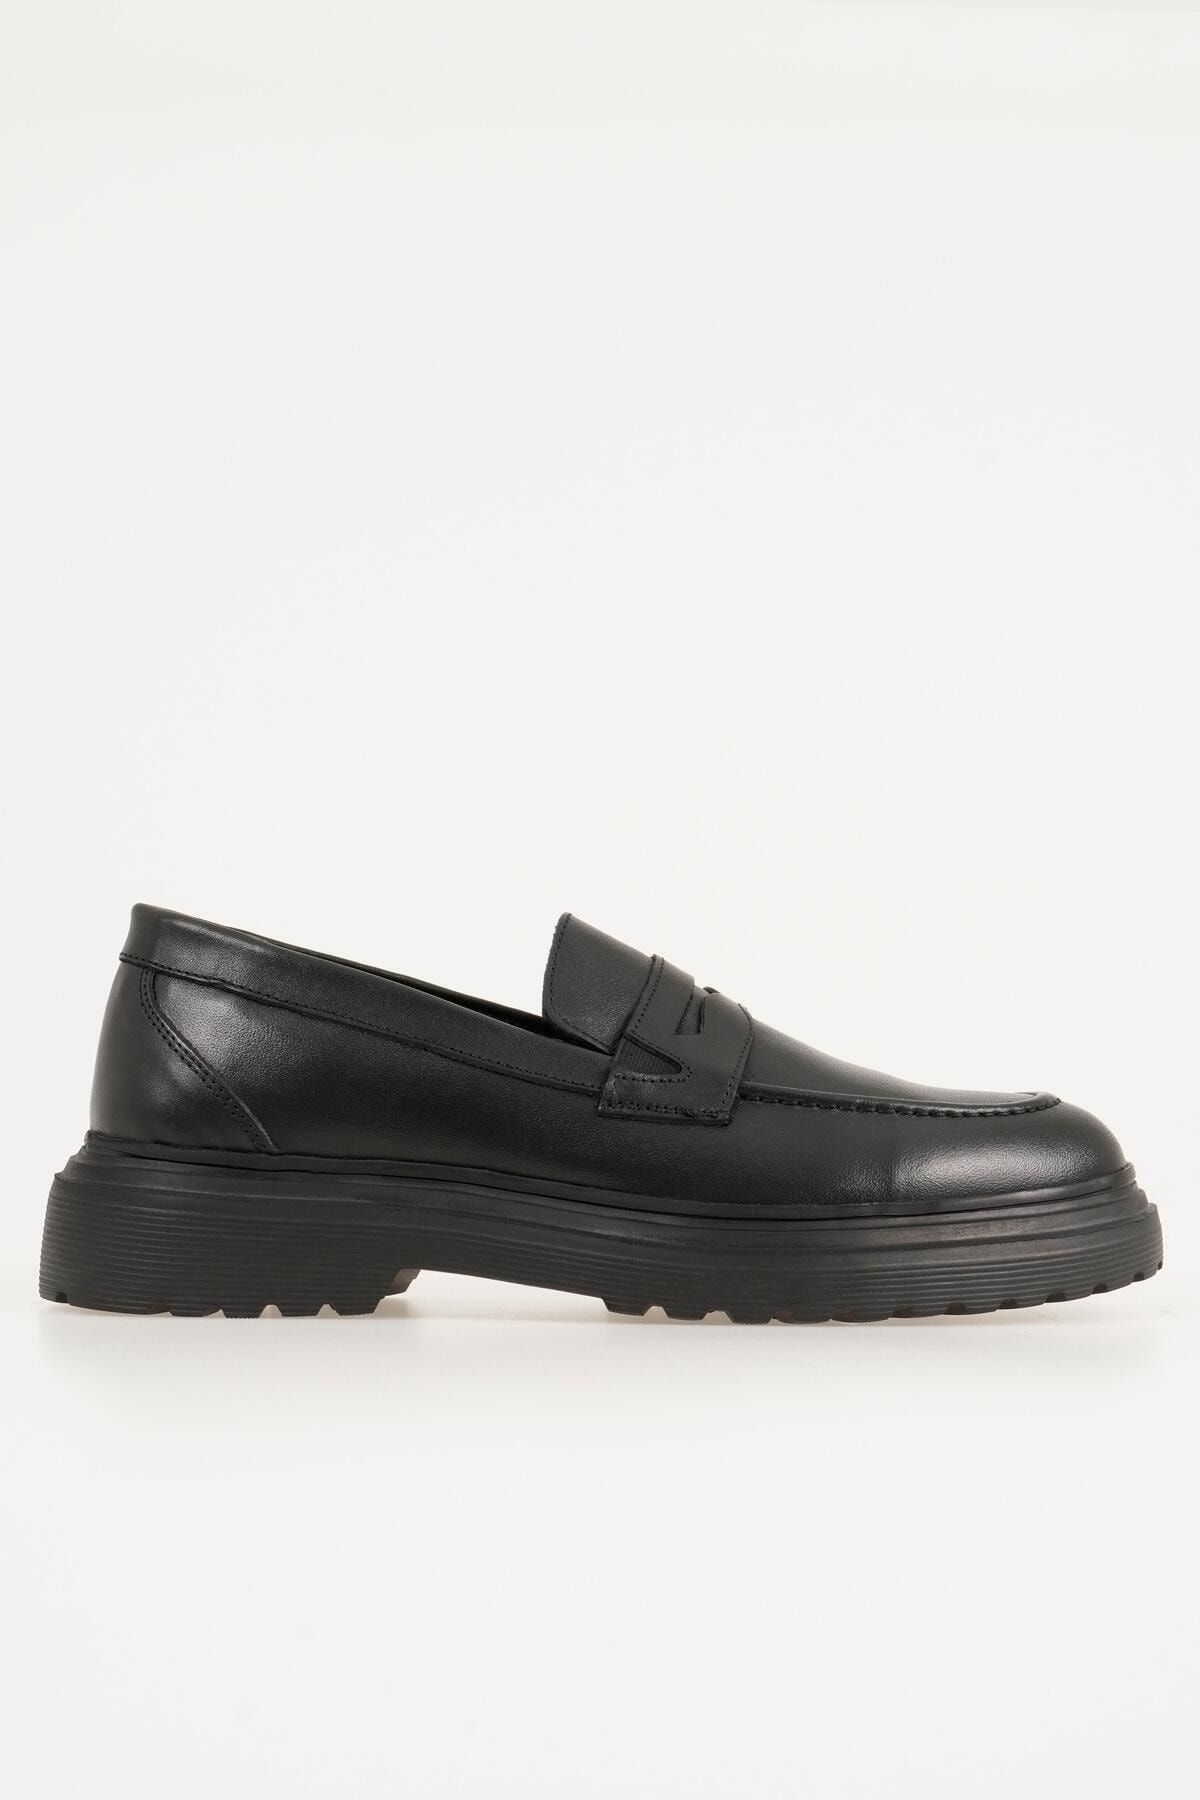 CZ London Hakiki Deri Erkek Loafer Kalın Tabanlı Kolay Giyim Ayakkabı